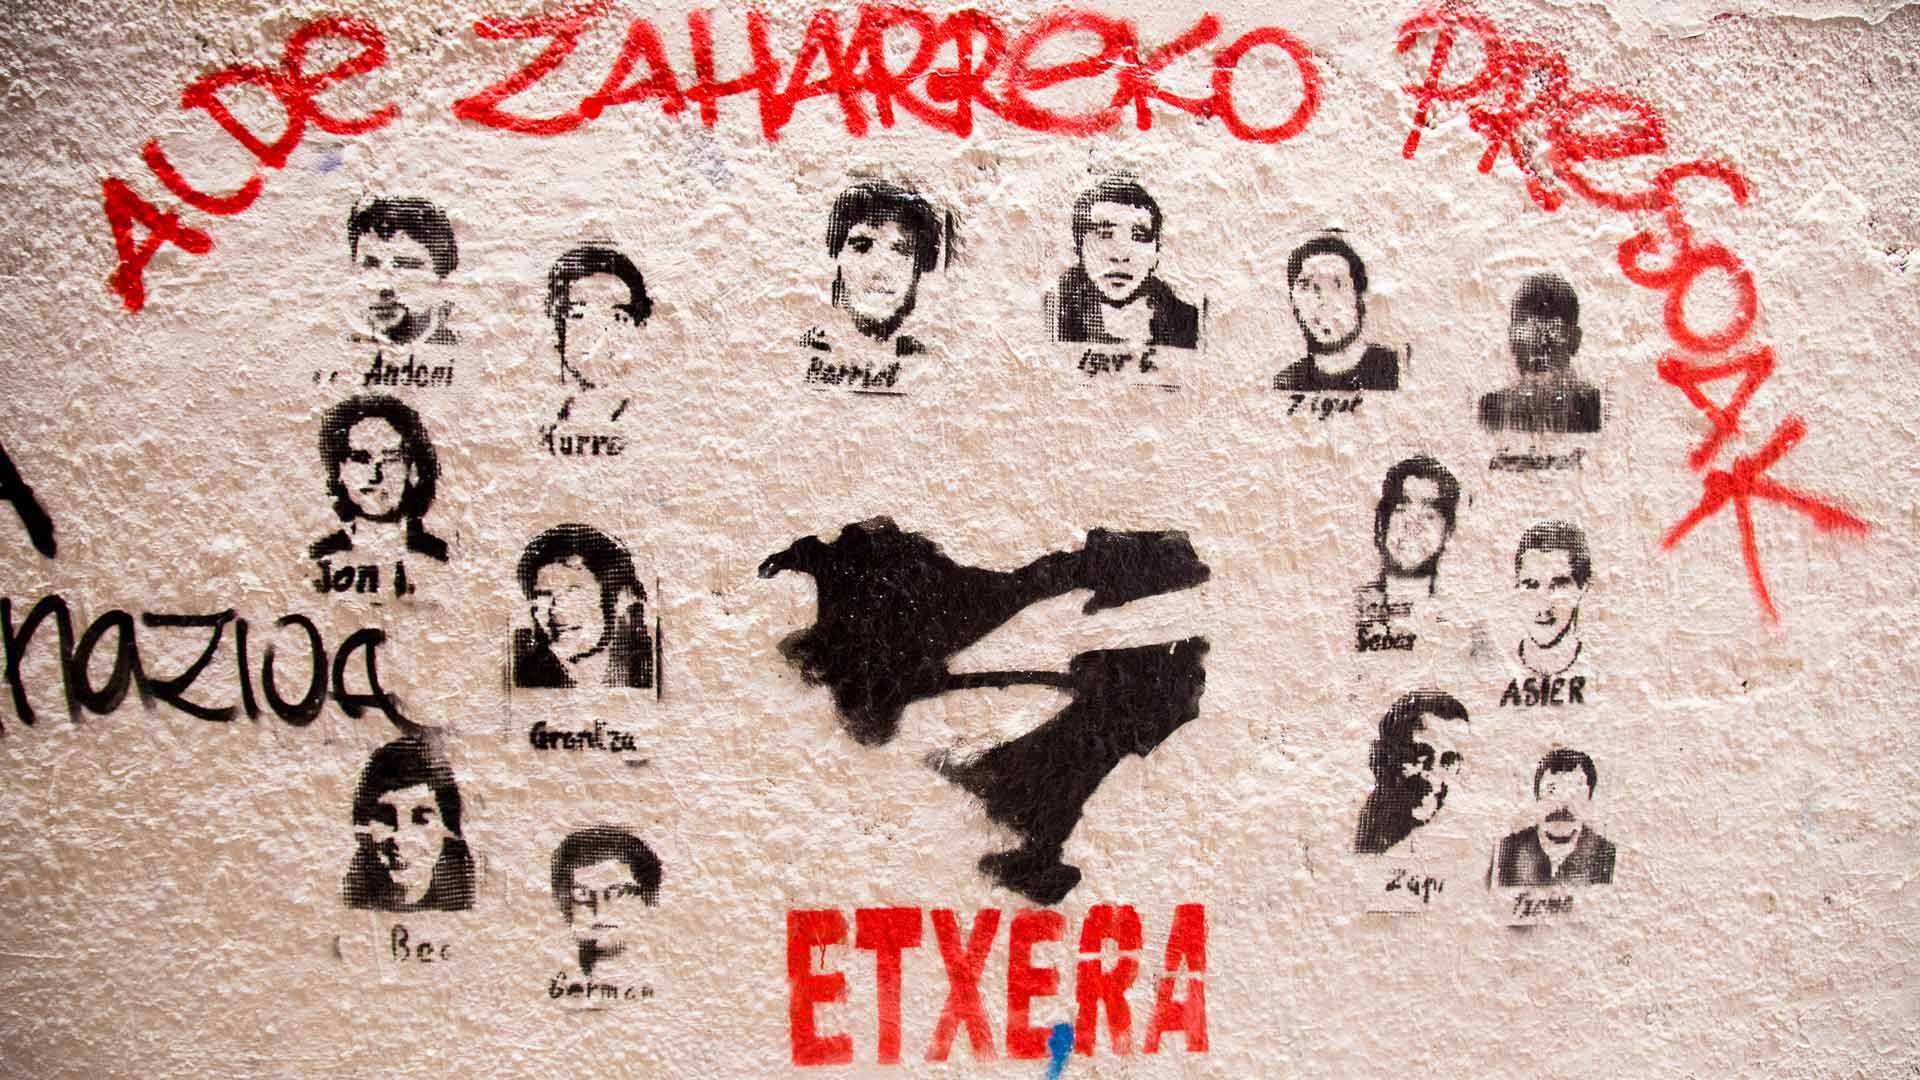 Les portraits de prisonniers et de prisonnières peints sur les murs d’une rue de Bilbao